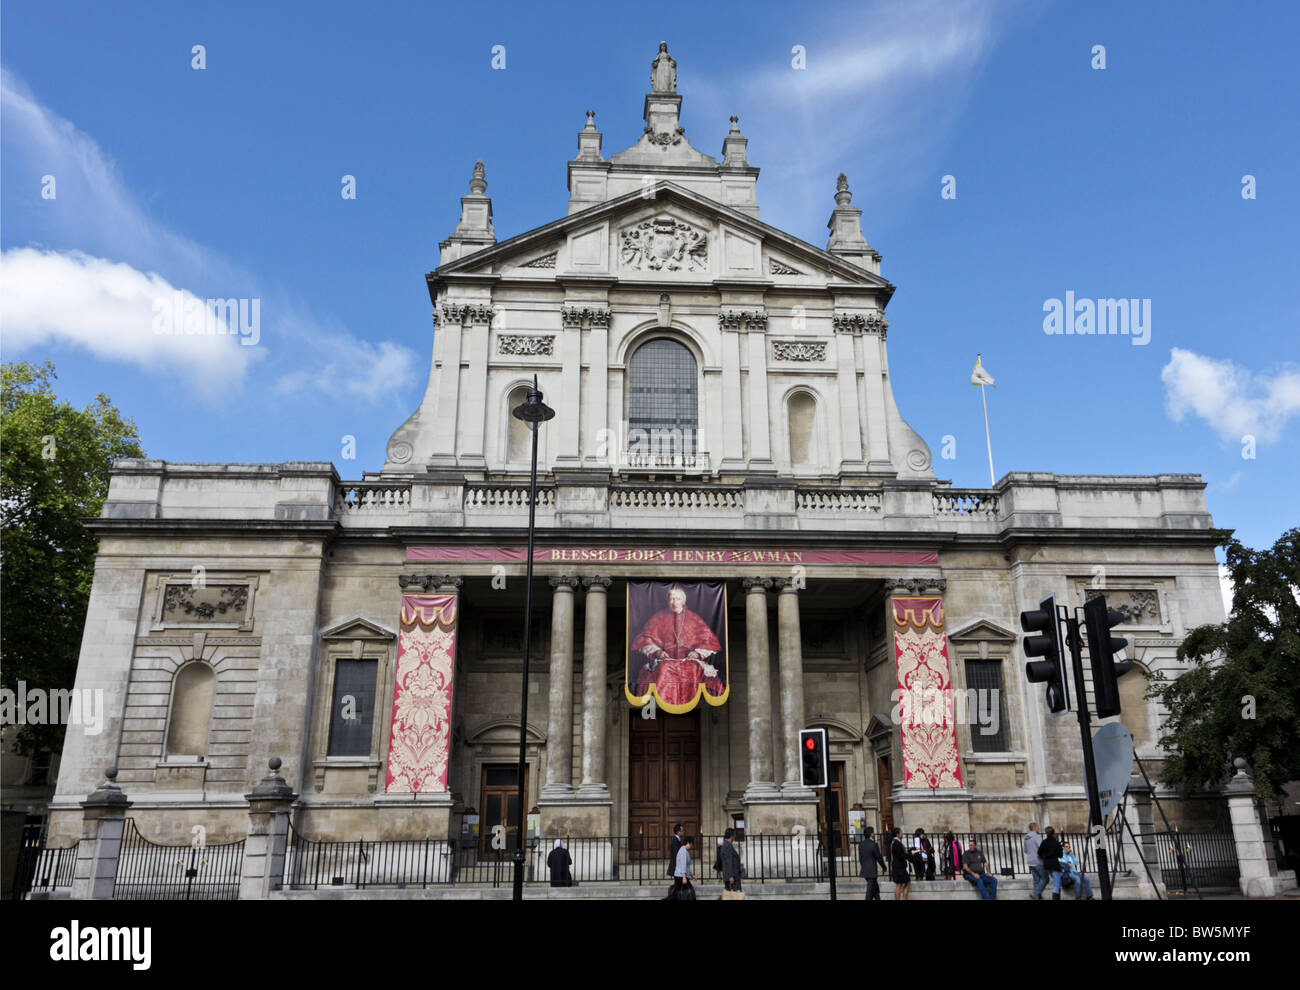 L'altitude de la frontale Brompton Oratory à South Kensington, la bannière déroulante coloré dispose d''Cardinal Newman. Banque D'Images